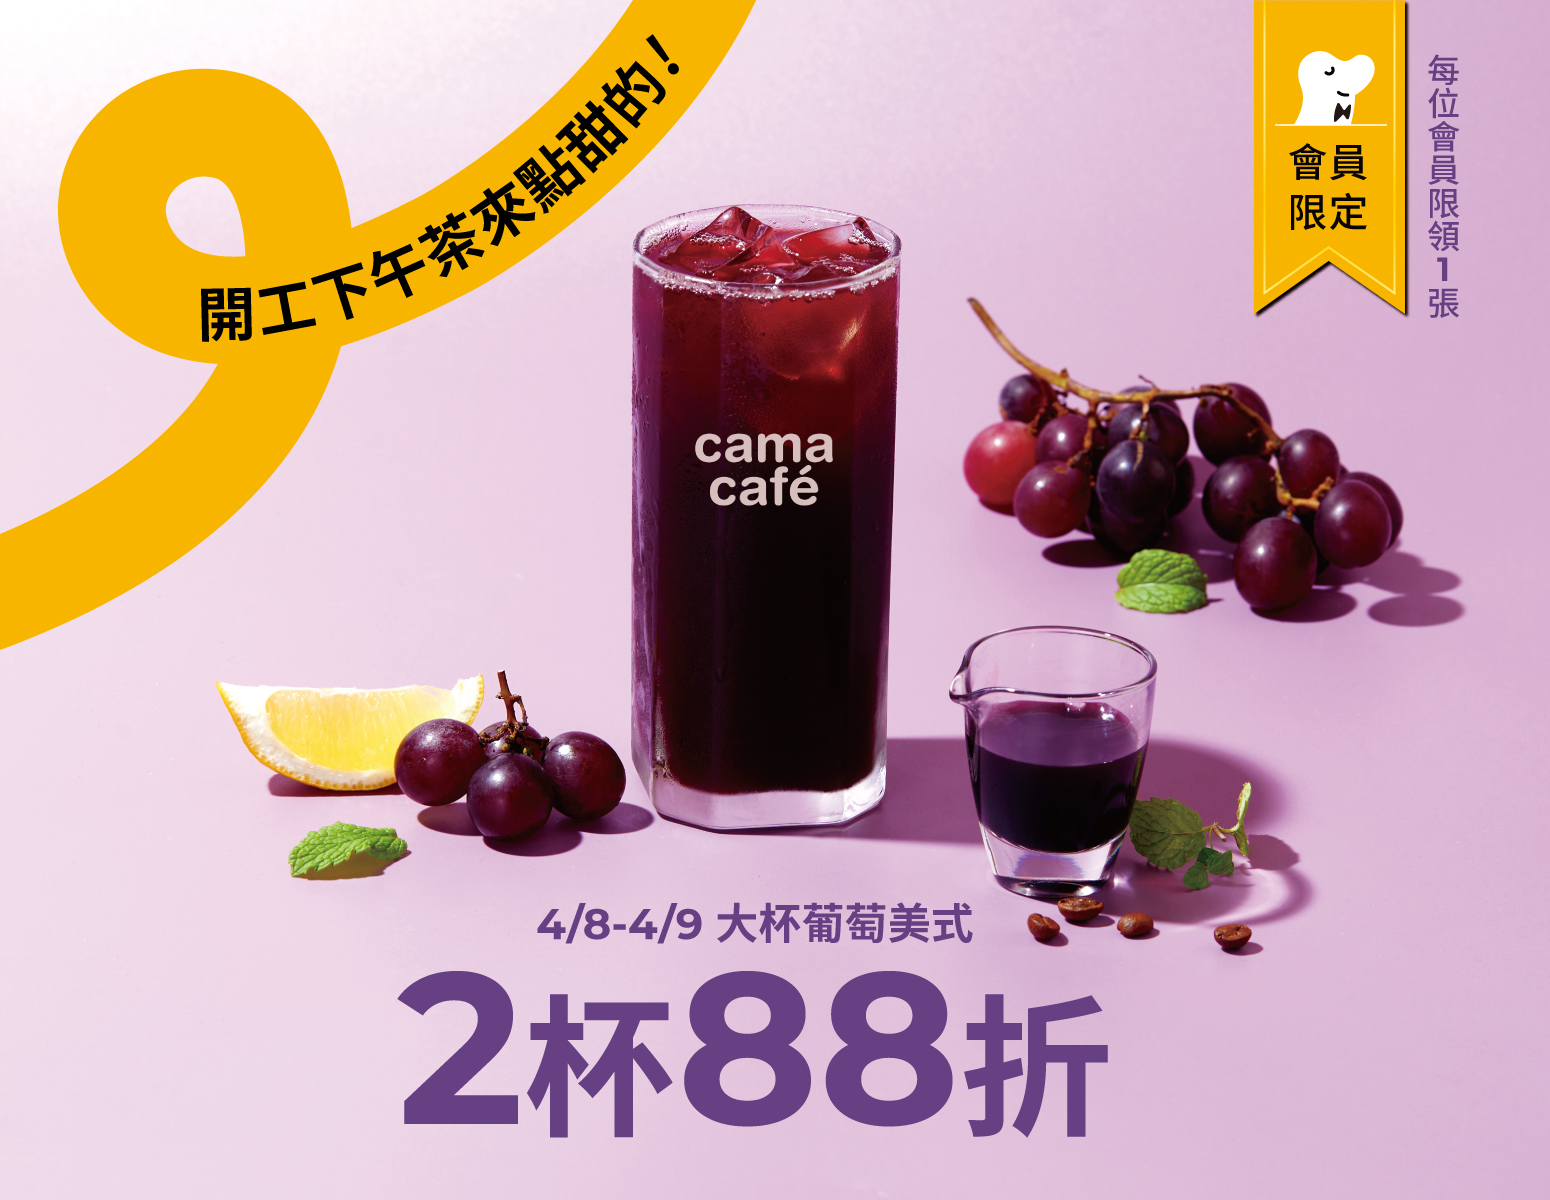 连假开工后，cama café连续两天大杯葡萄风味美式2杯88折优惠。图/cama café提供